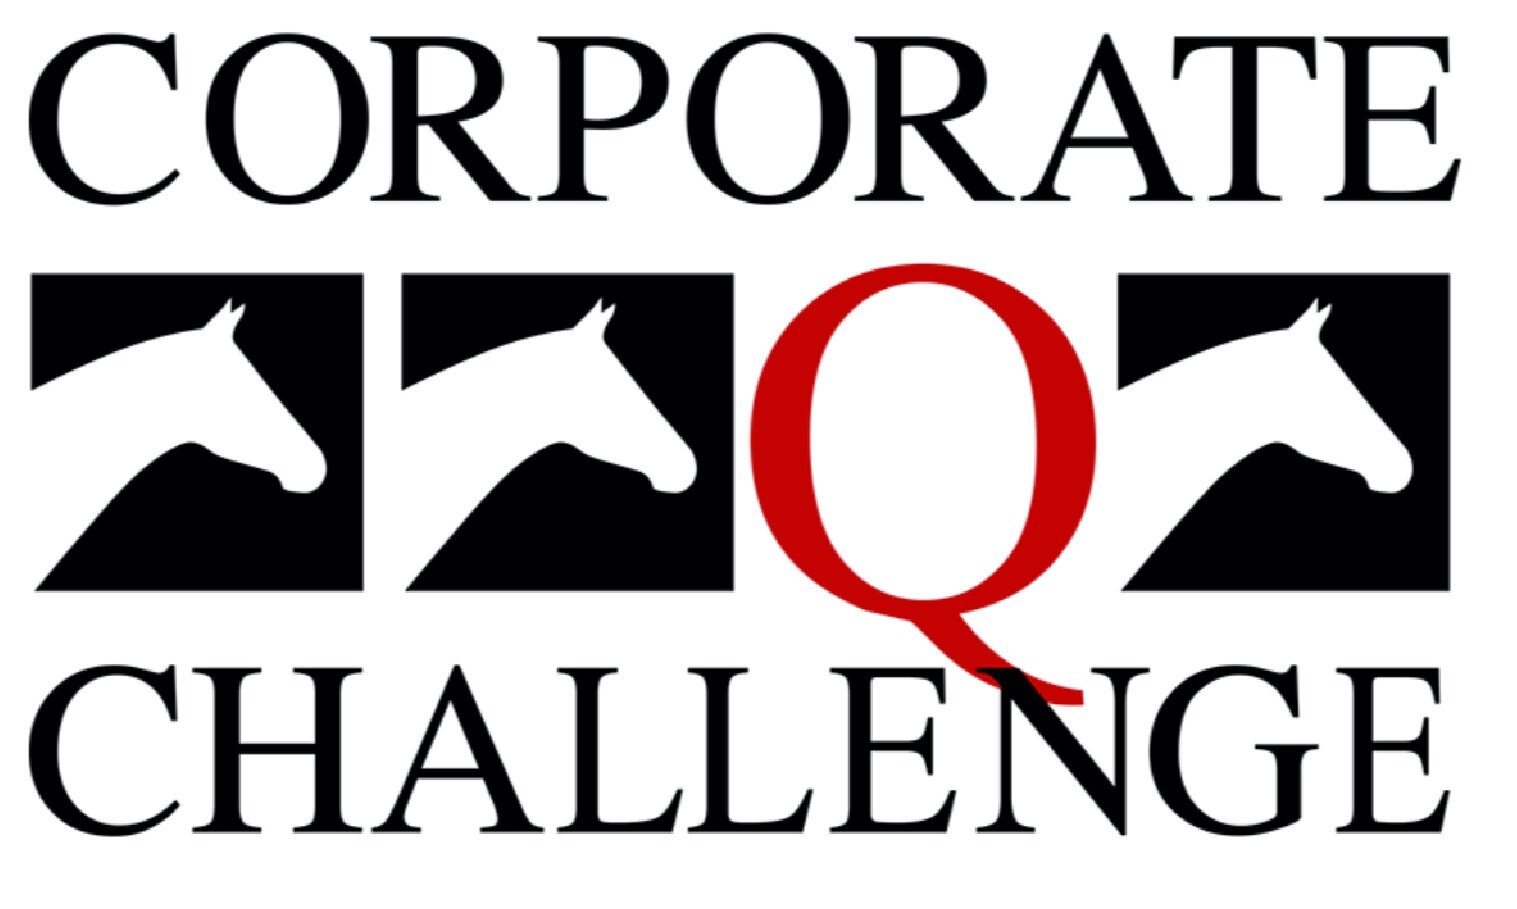 Minnesota Amateur Quarter Horse Association Corporate Challenge